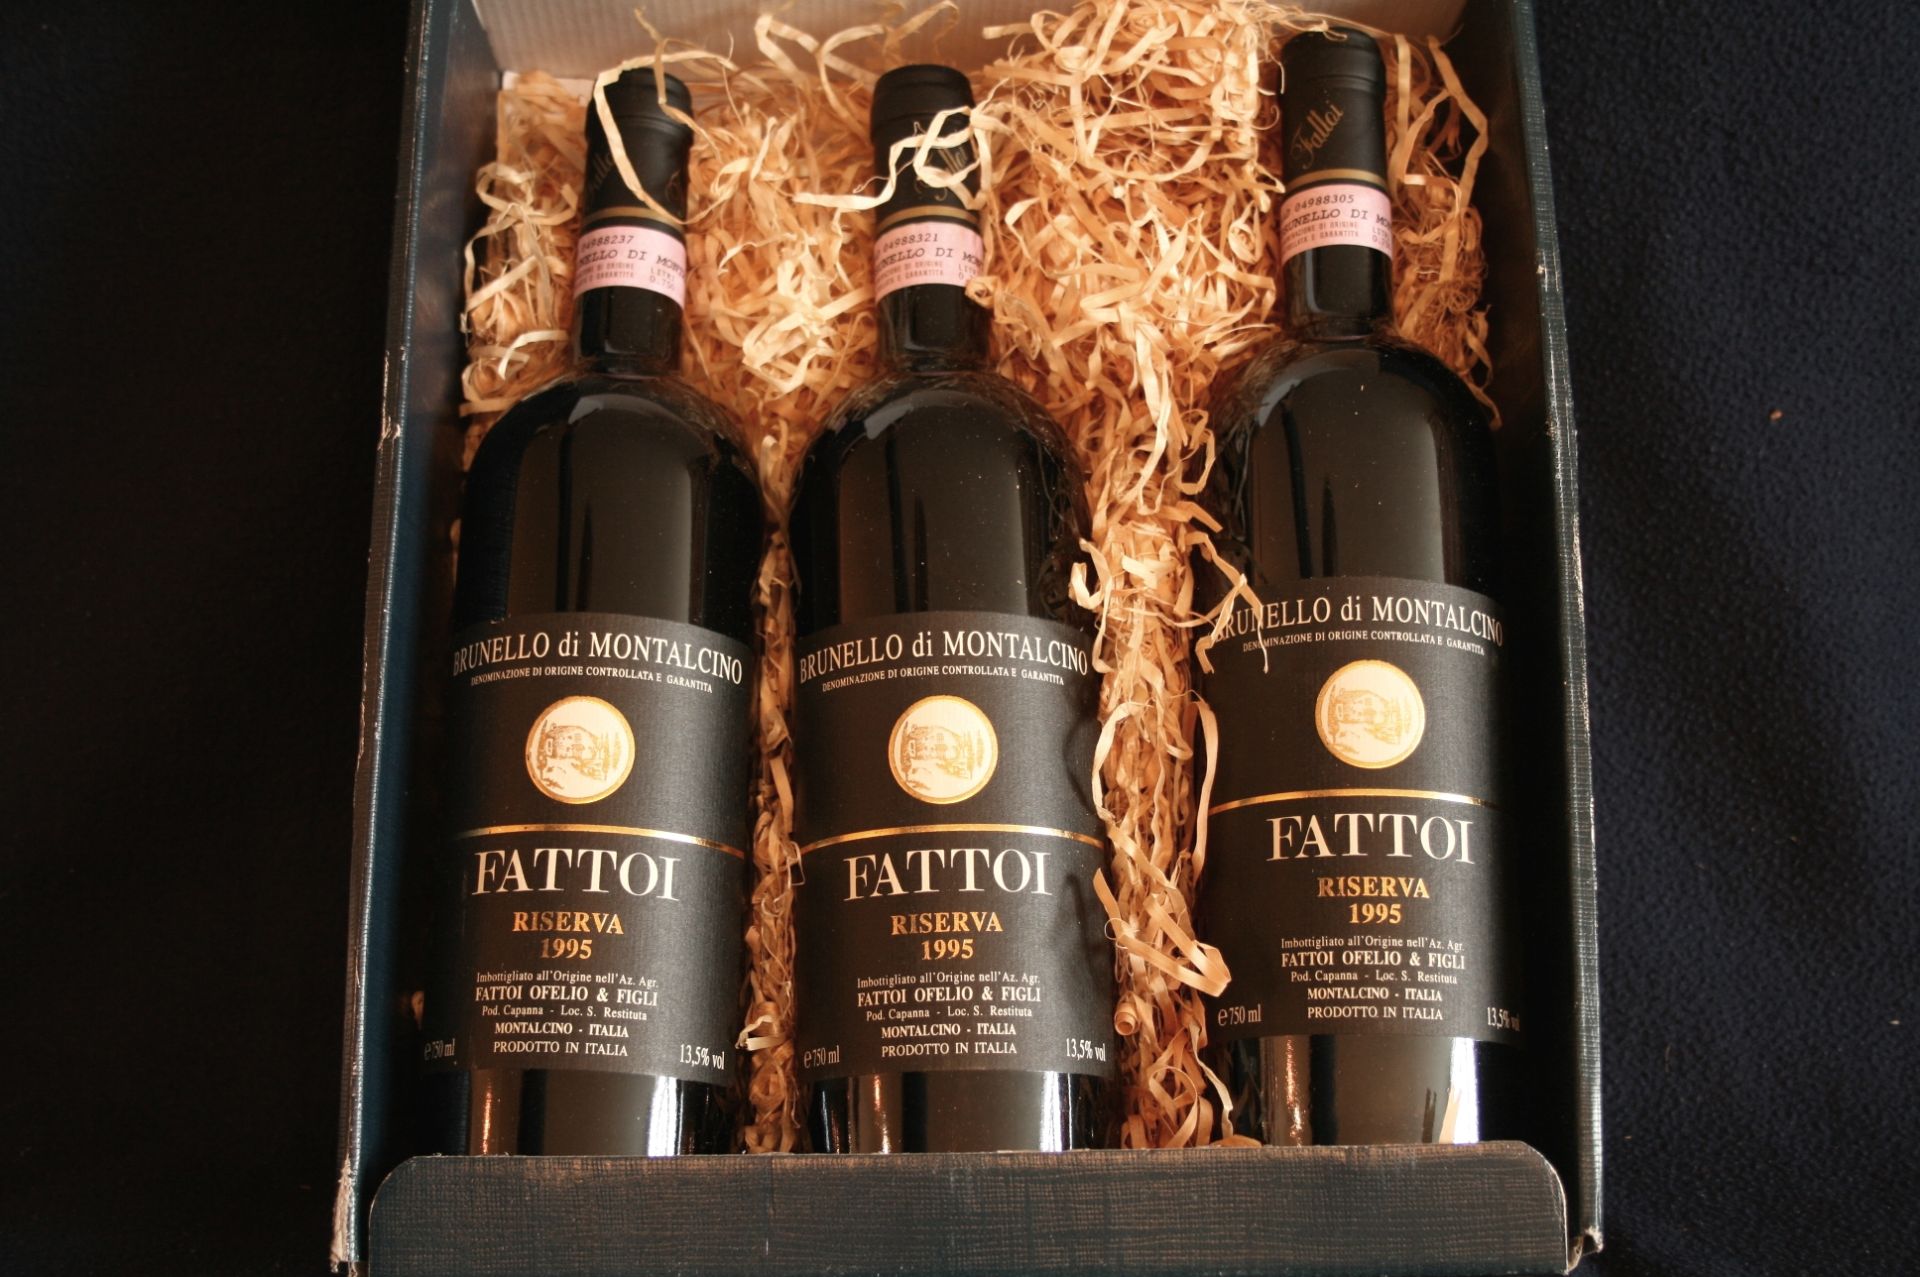 Dans un coffret en carton : 3 bouteilles de Brunello di Montalcino, FATTOI, Riserva [...]